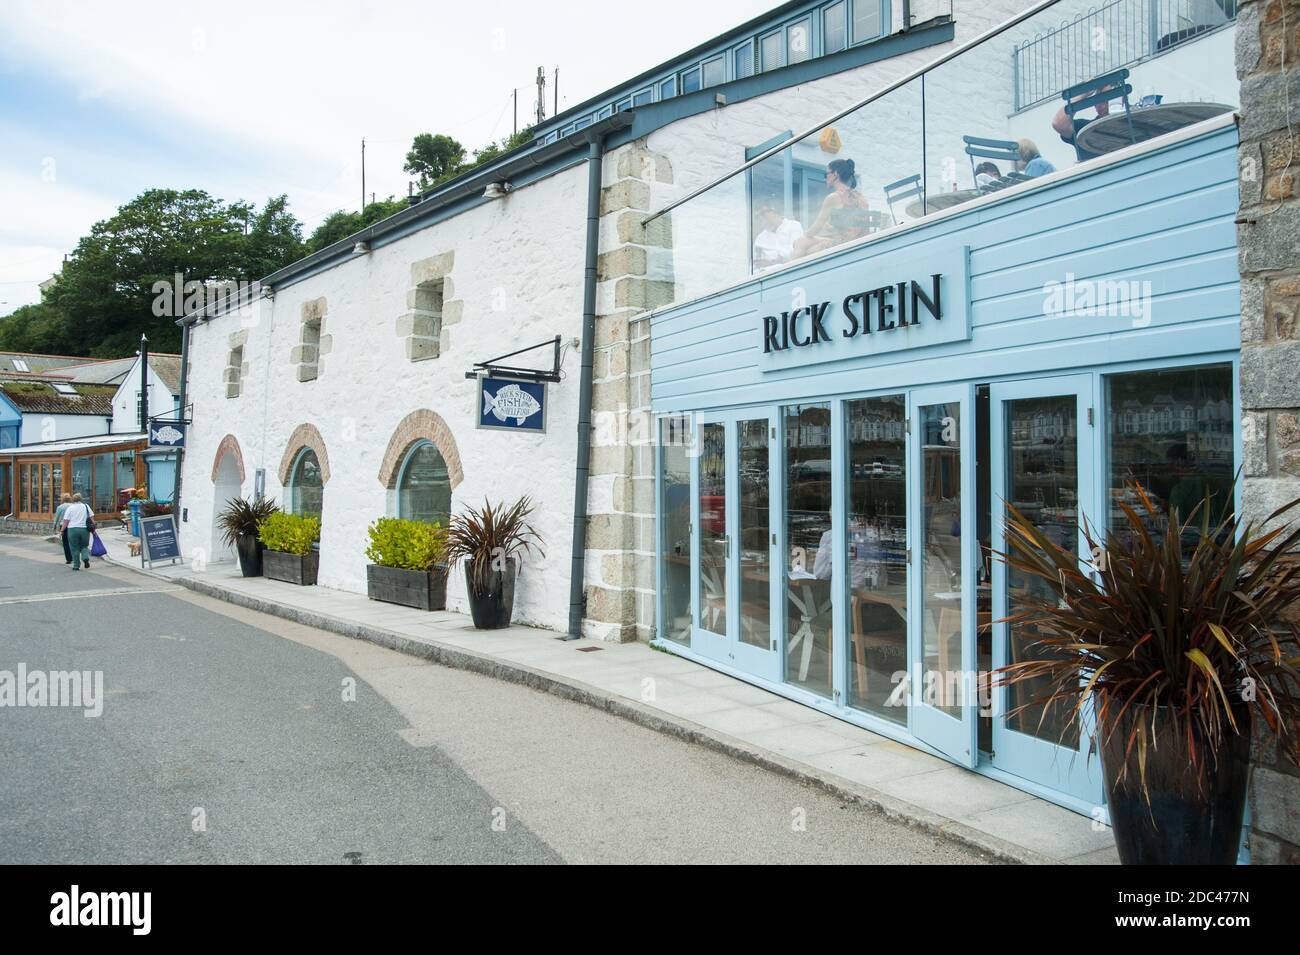 Rick Stein Fish Restaurant, Porthleven, Cornwall Stock Photo